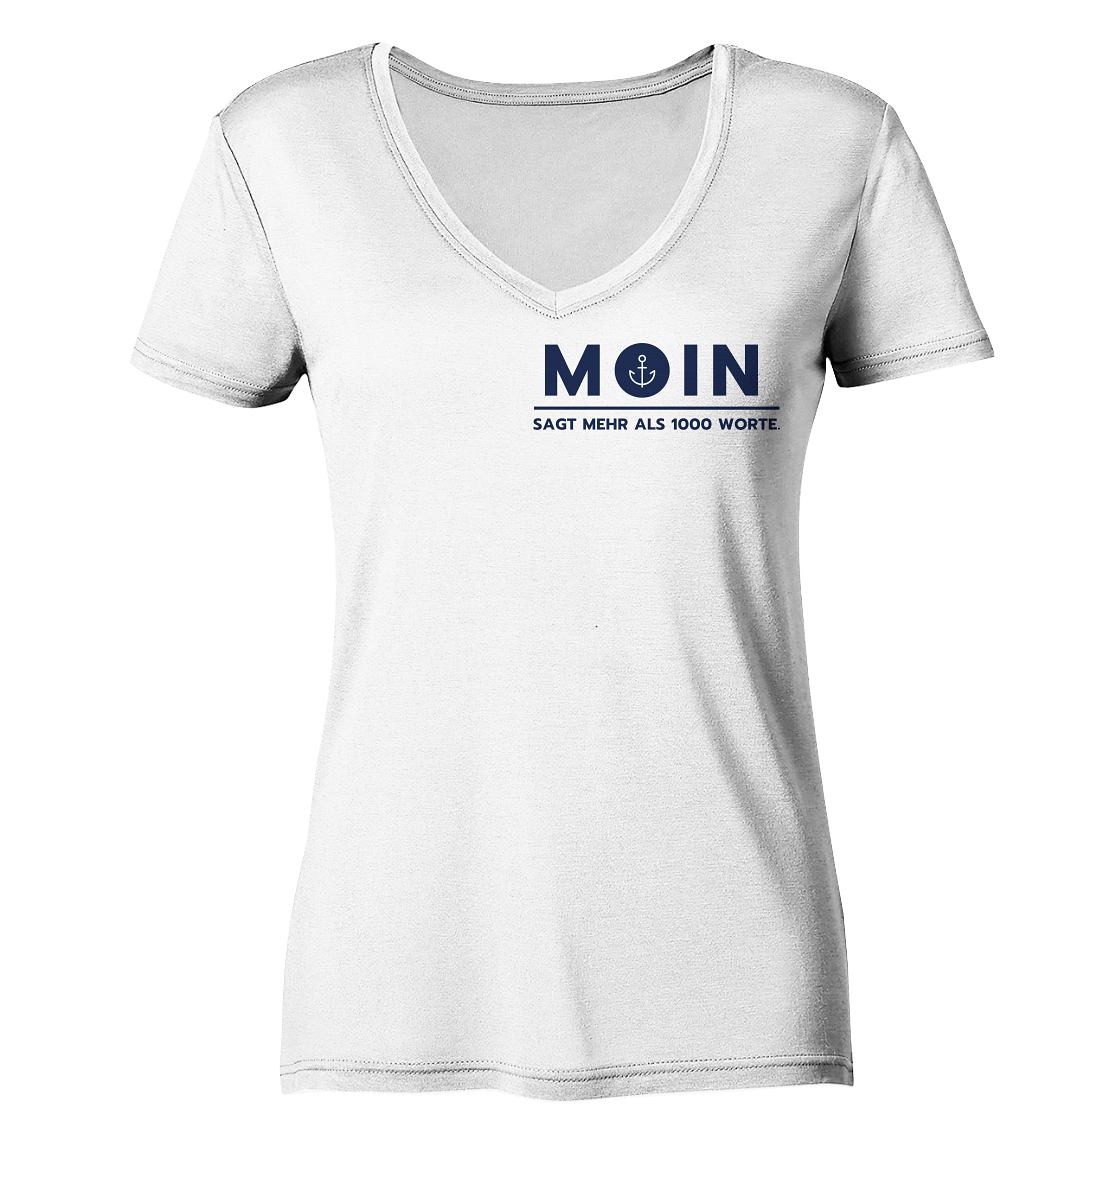 MOIN sagt mehr als 1000 Worte. - Ladies Organic V-Neck Shirt